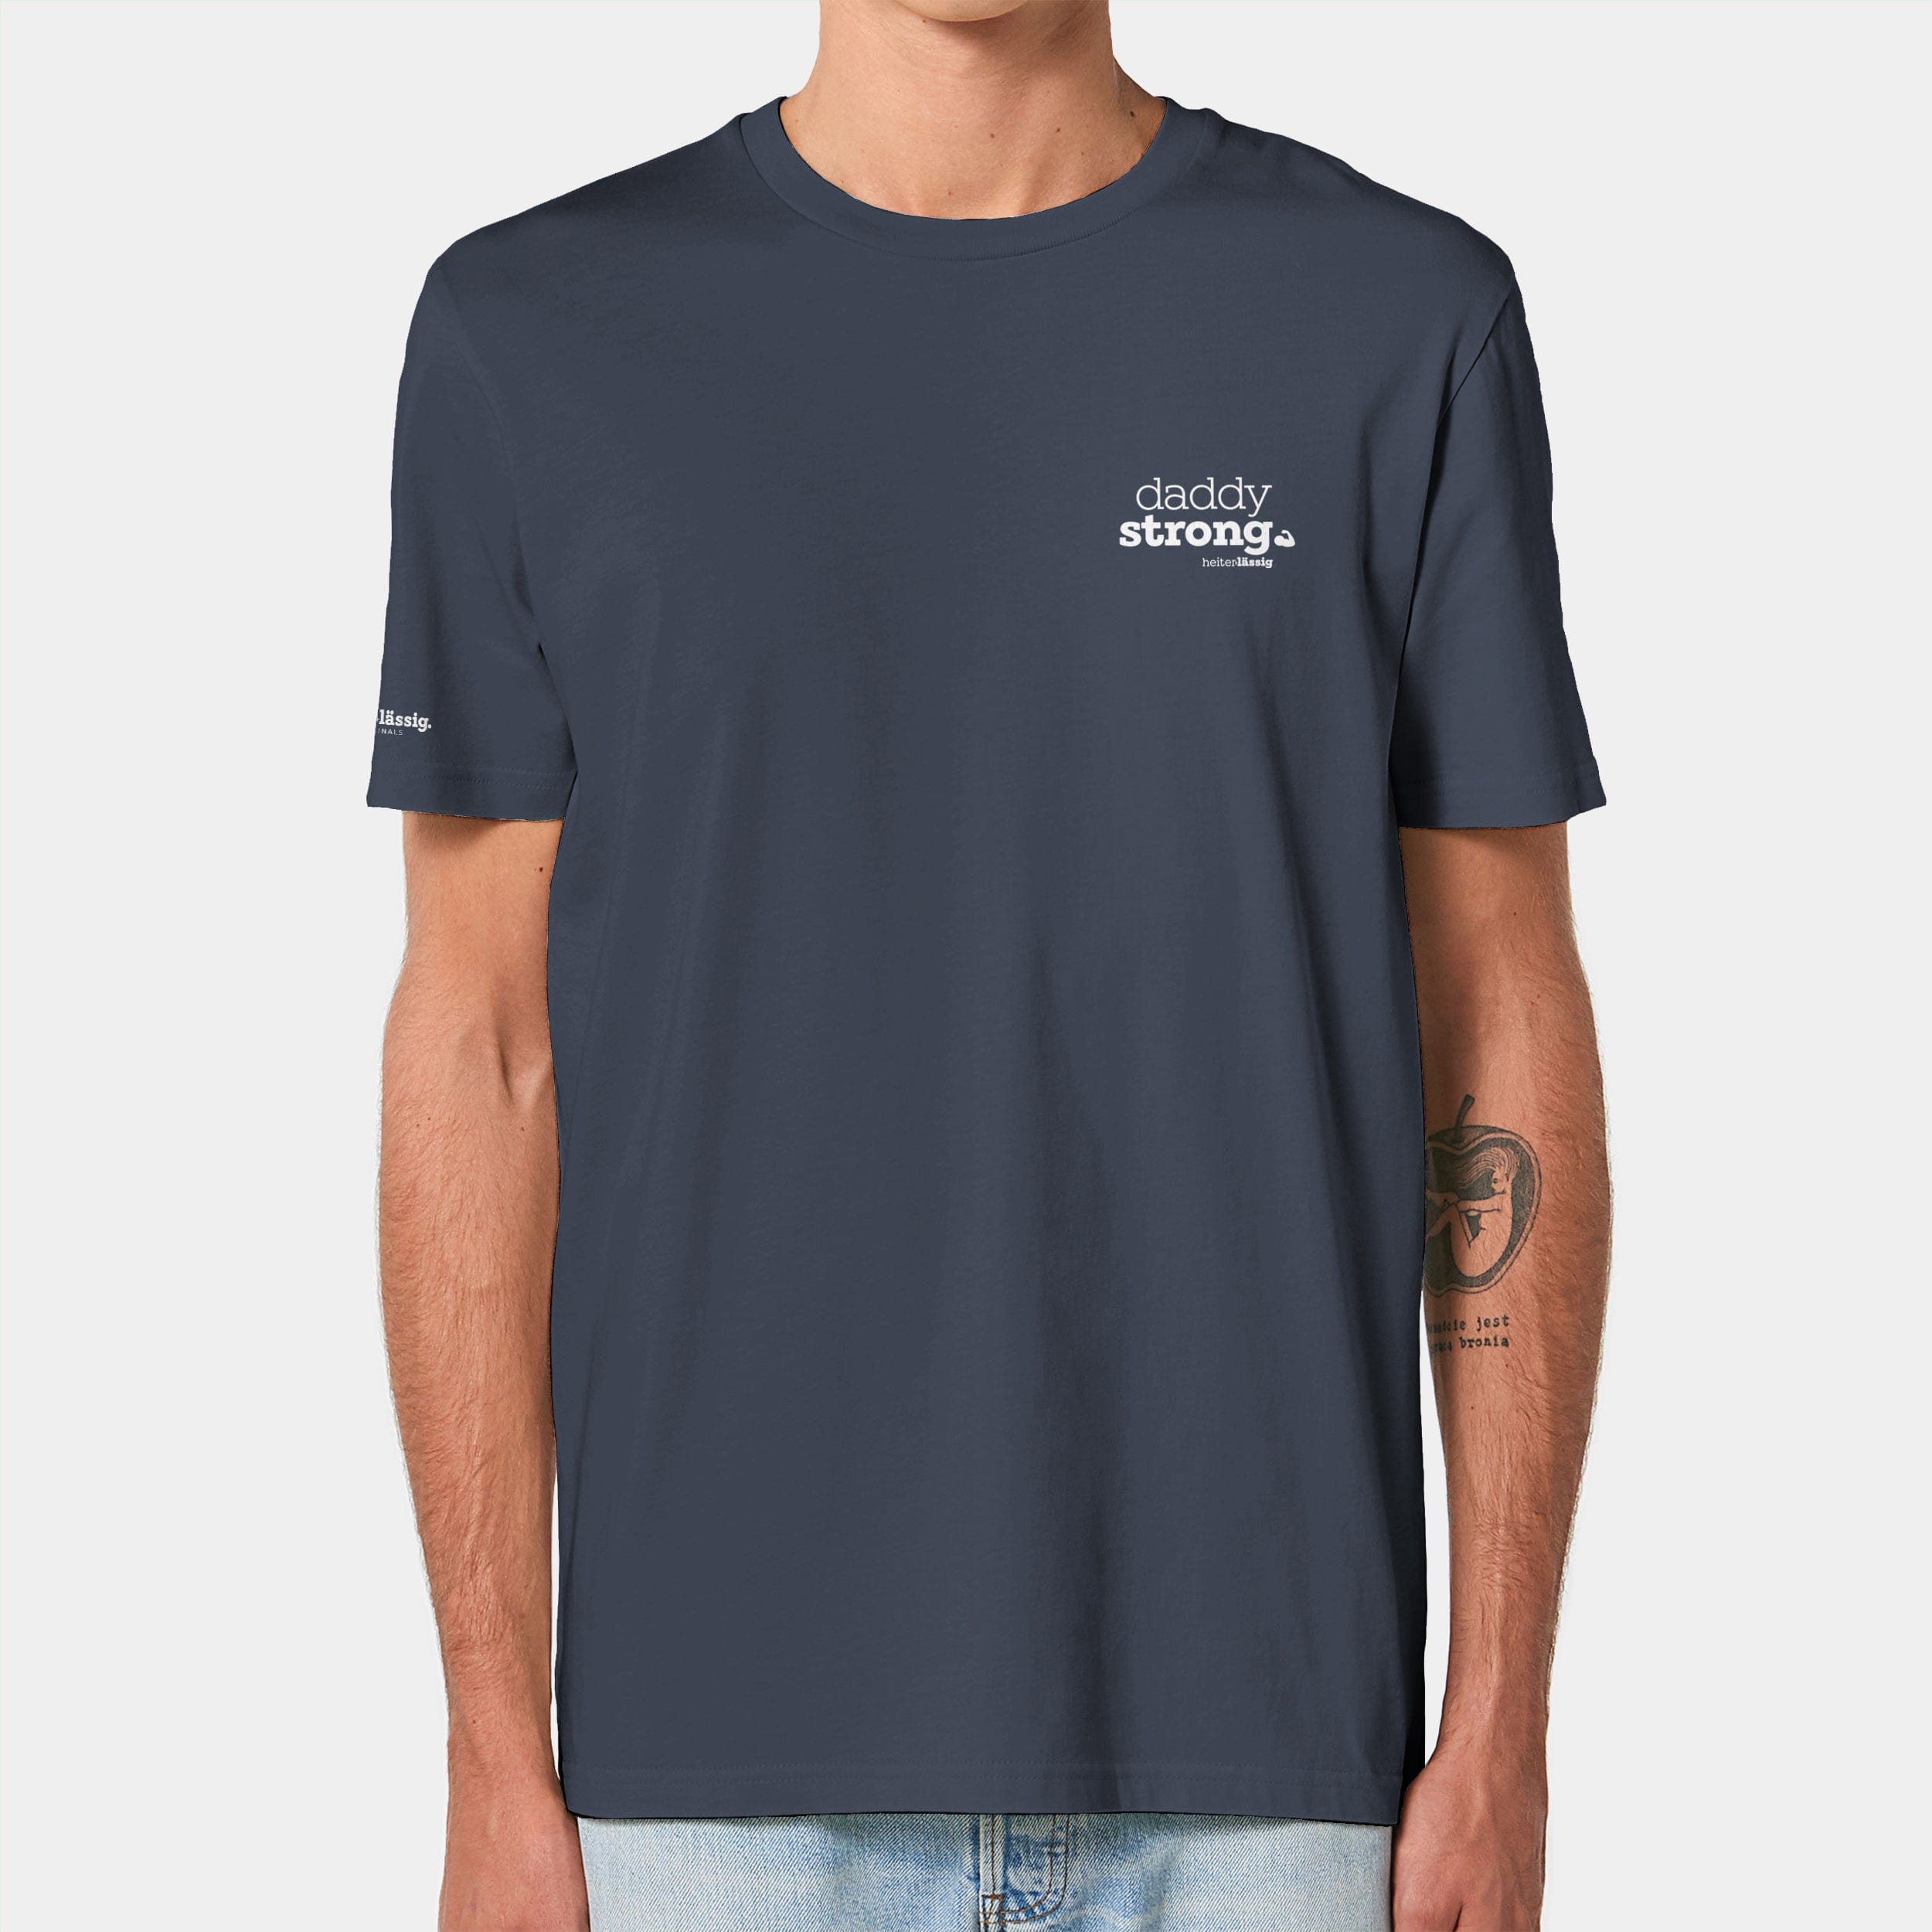 HEITER & LÄSSIG T-Shirt ORIGINAL "daddystrong" XXS / india ink grey - aus nachhaltiger und fairer Produktion